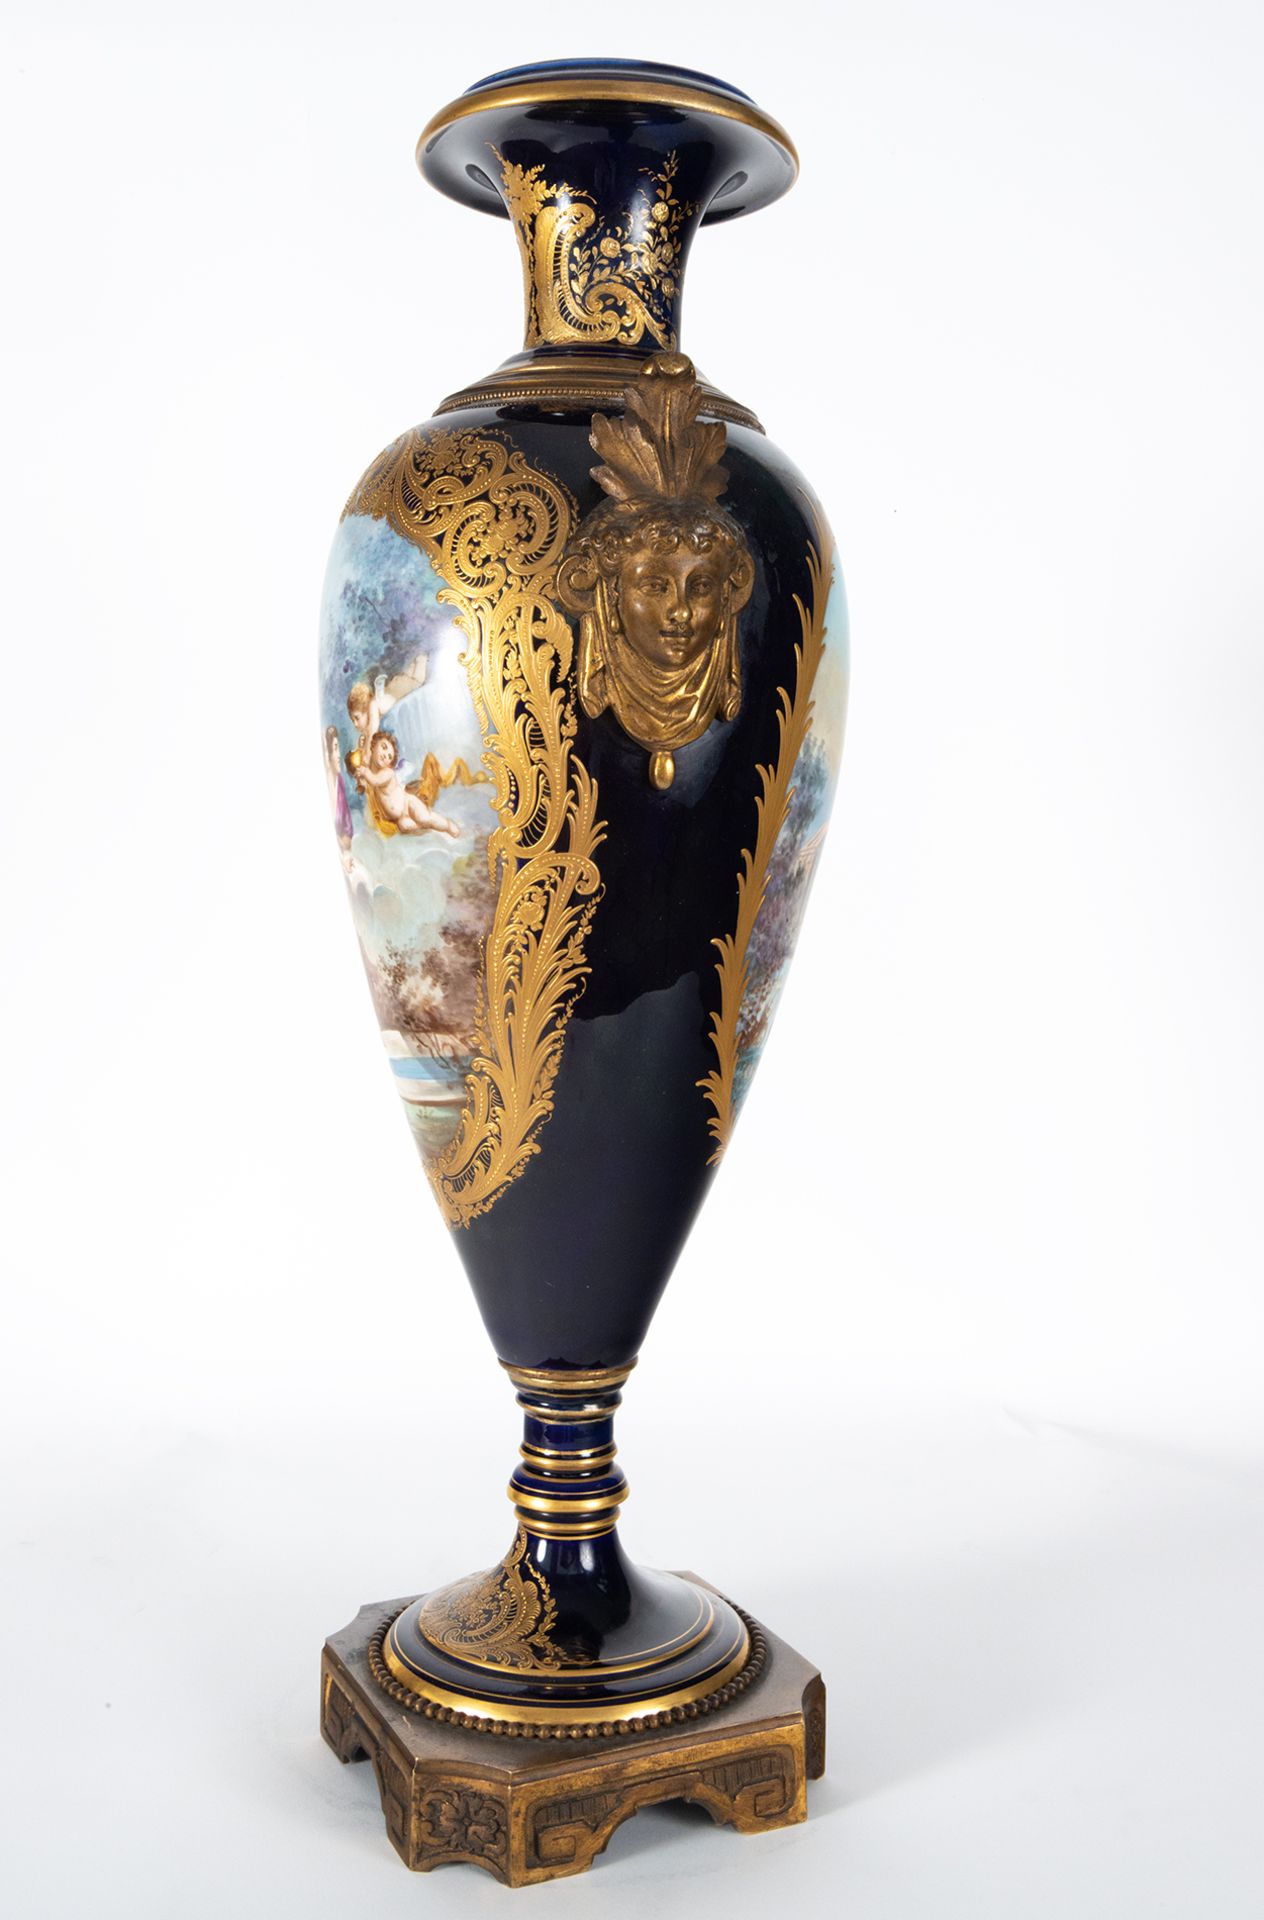 Pair of Svres Vases, 19th century French school - Image 10 of 15